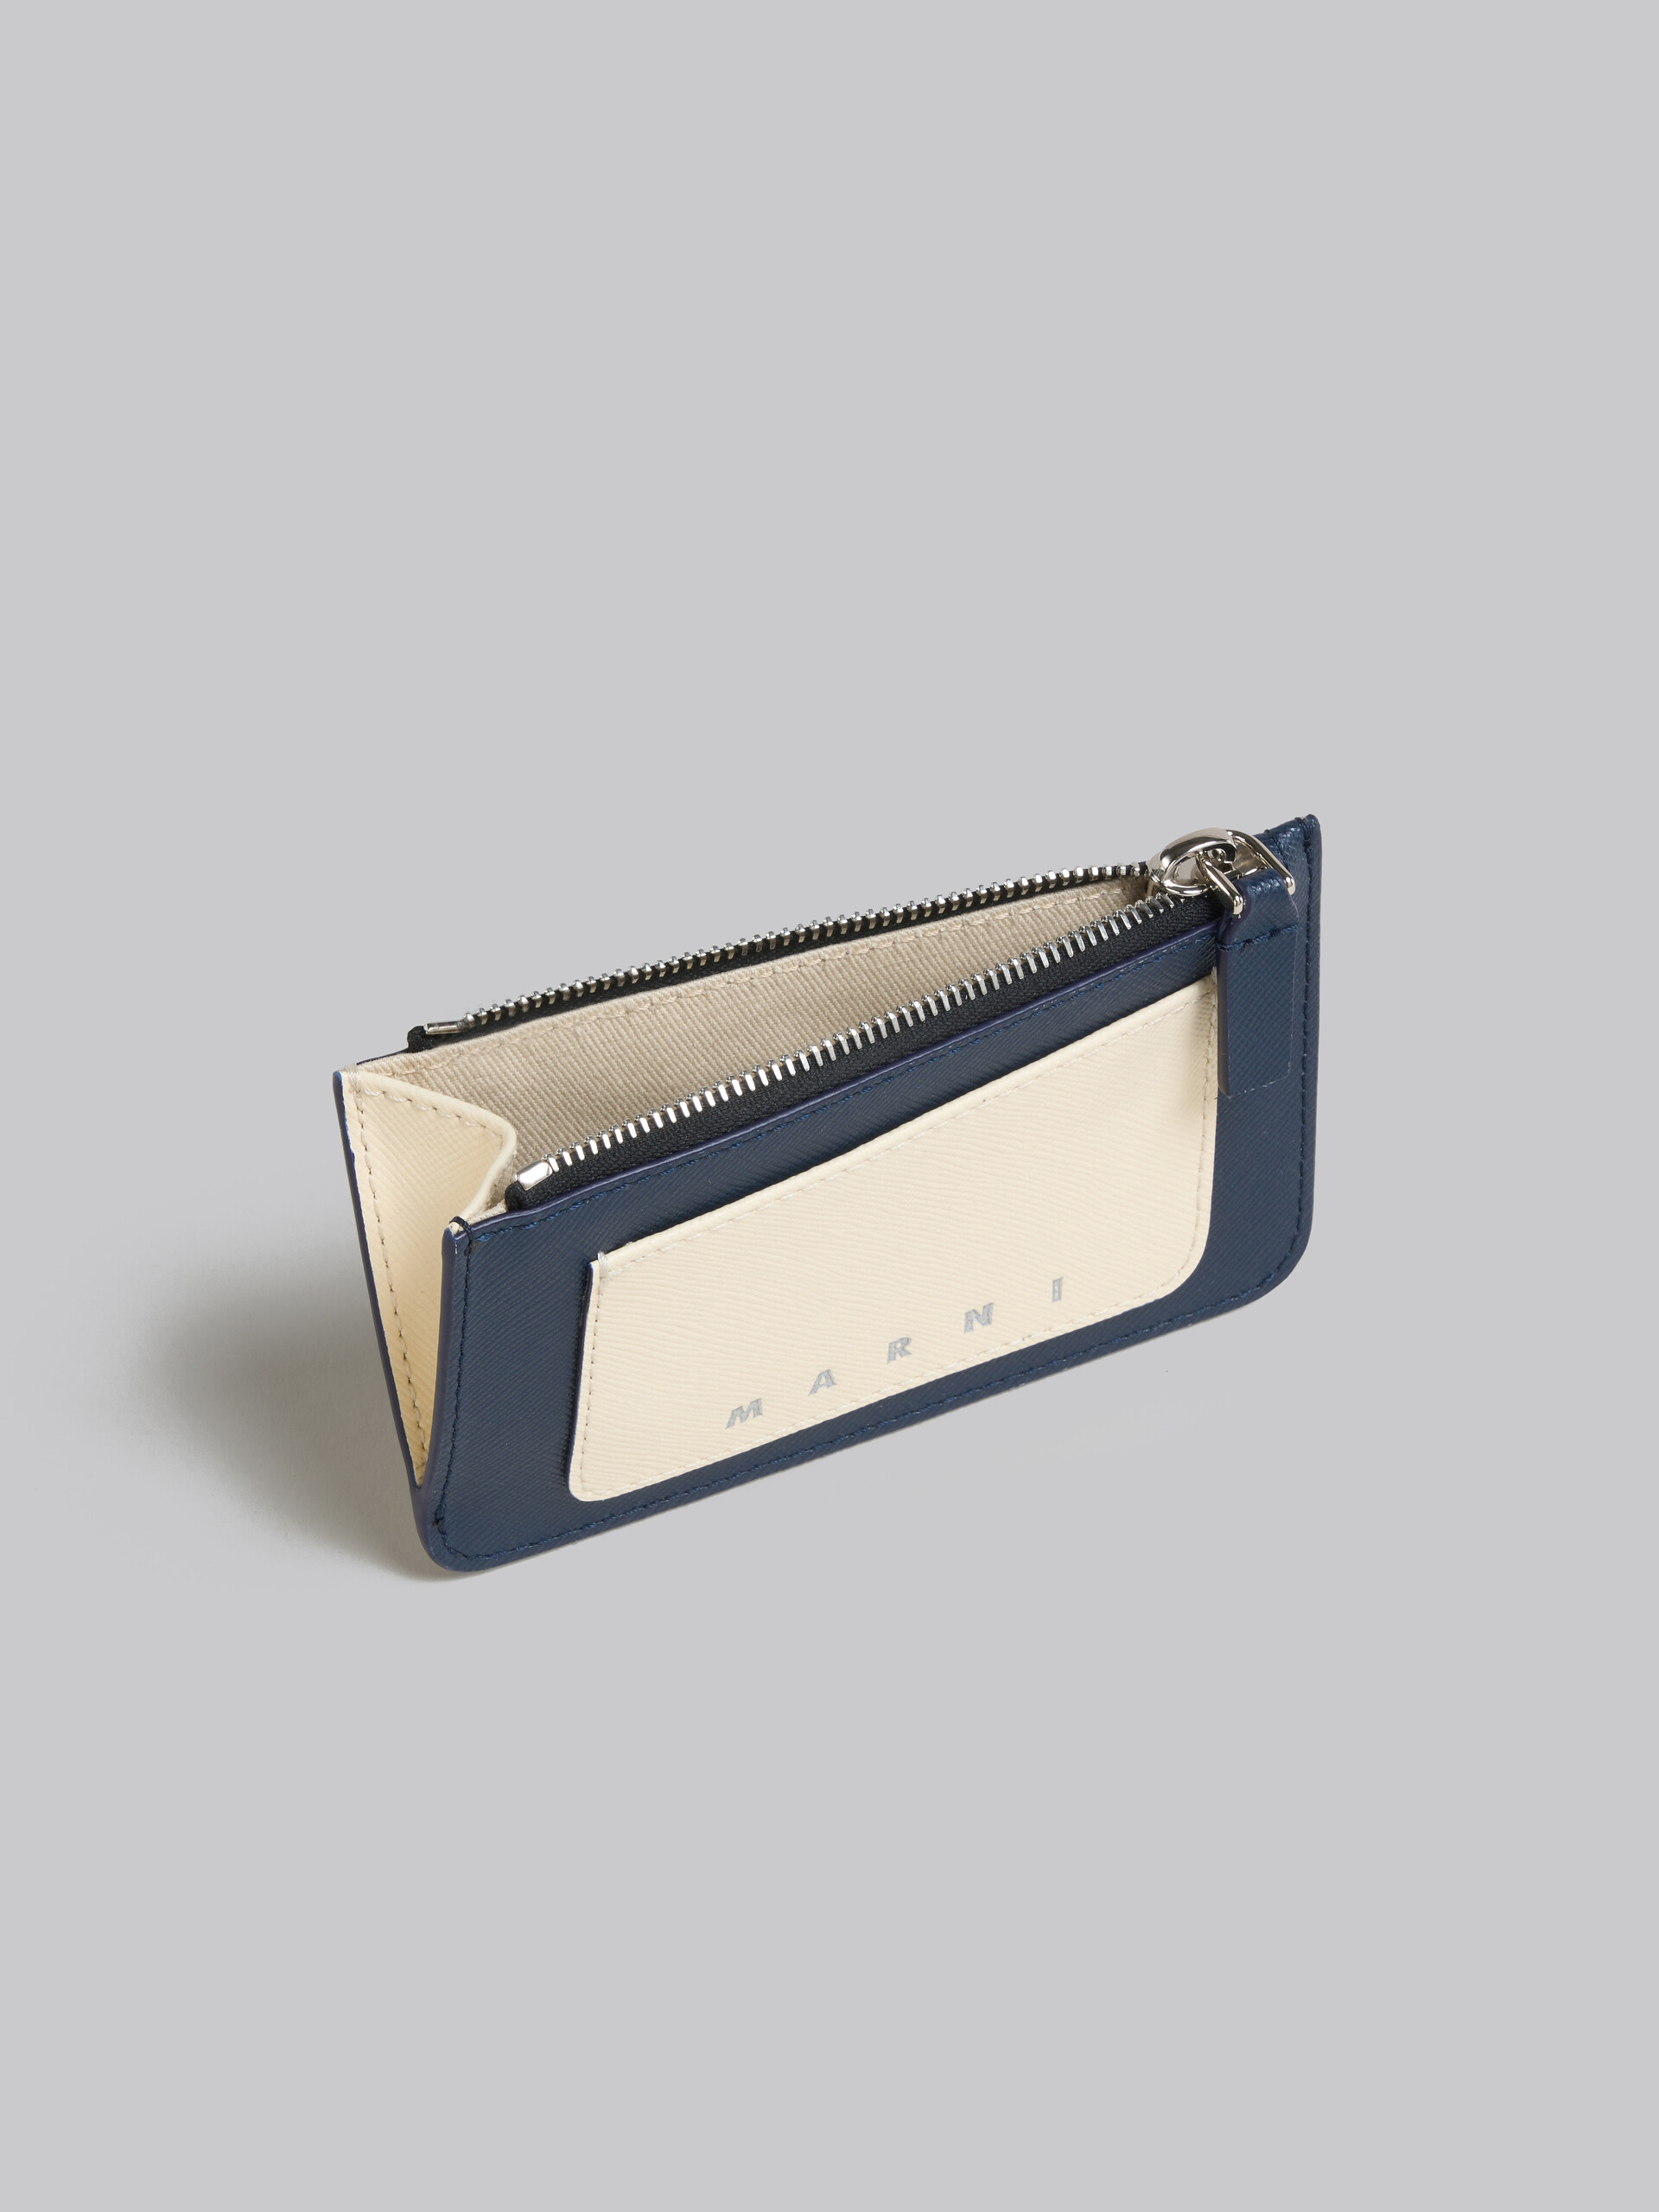 クリーム ディープブルー サフィアーノレザー製 カードホルダー、ファスナー式ポケット - 財布 - Image 2